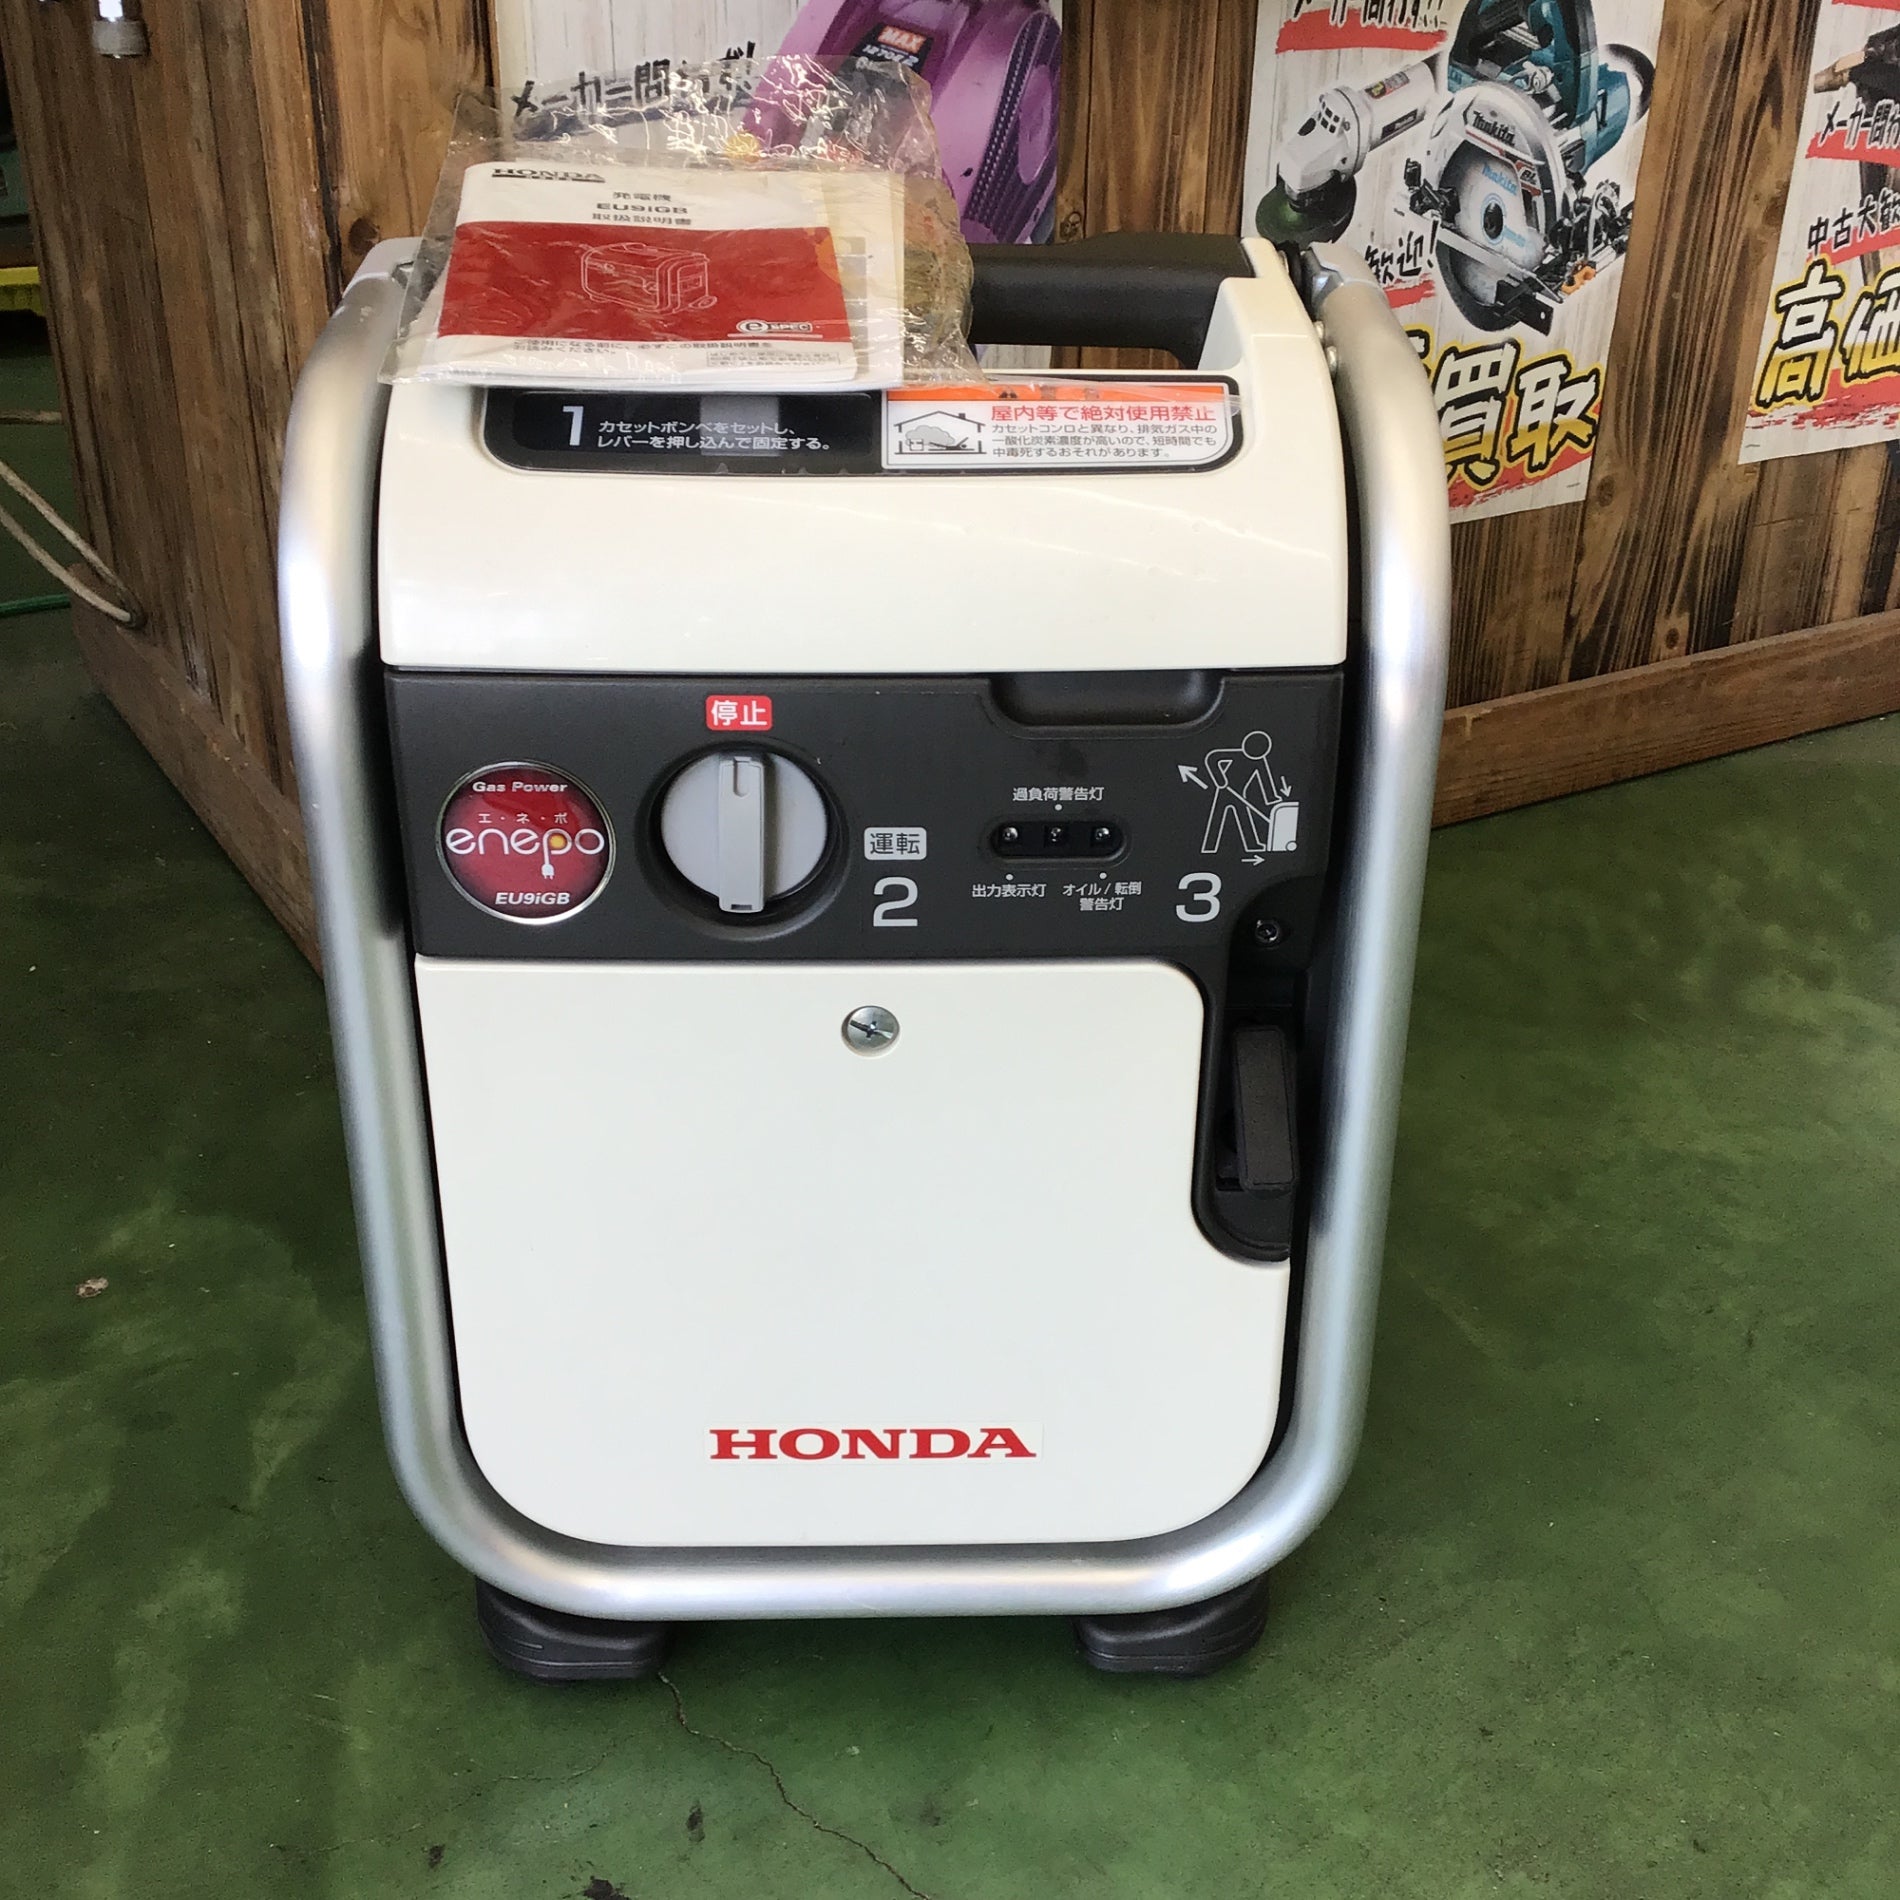 ホンダ(Honda)発電機 エネポ EU9iGB - 埼玉県の家電